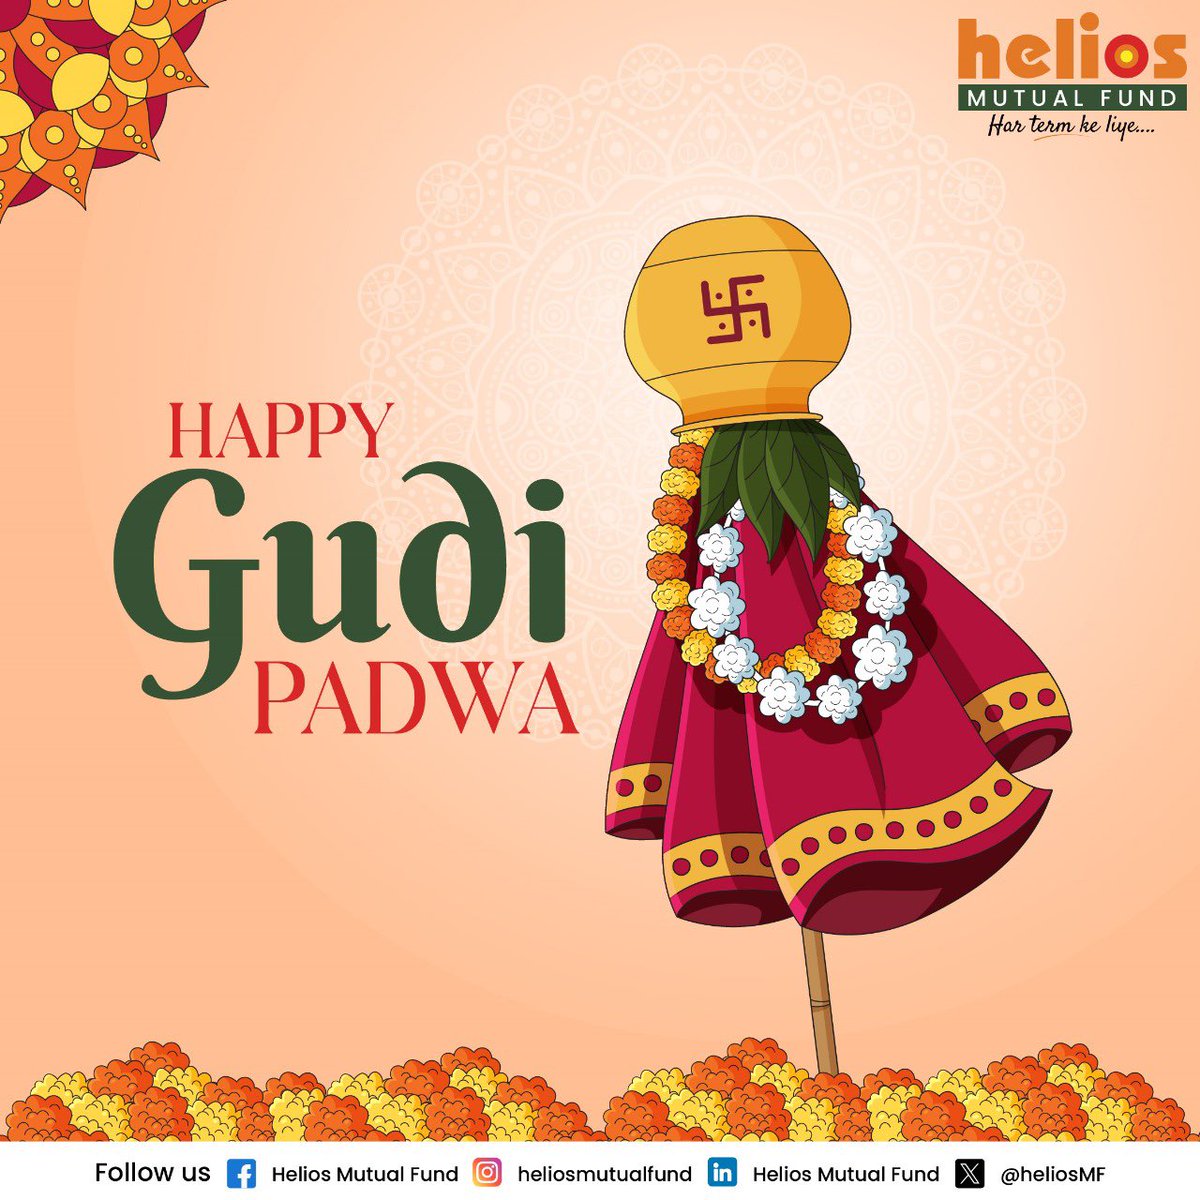 Happy Gudi Padwa!